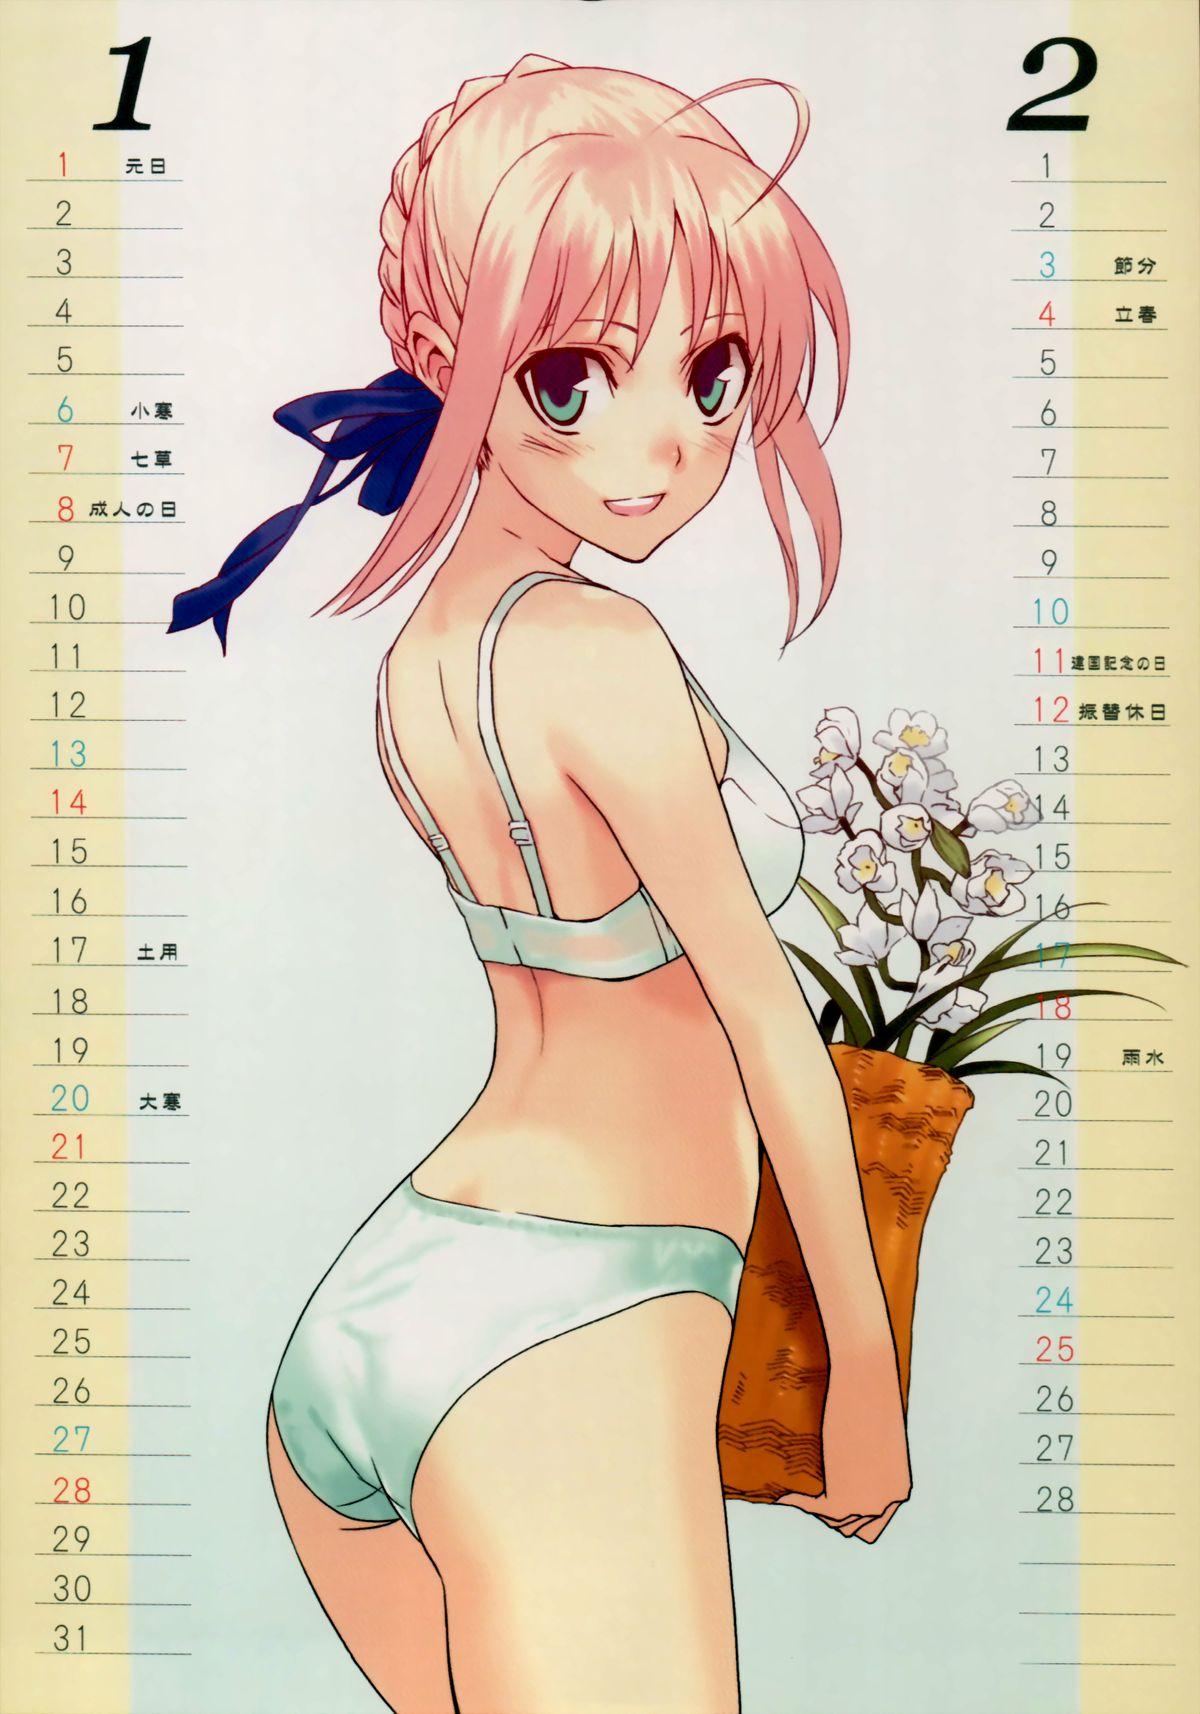 Fate Mini Calendar 2007 2